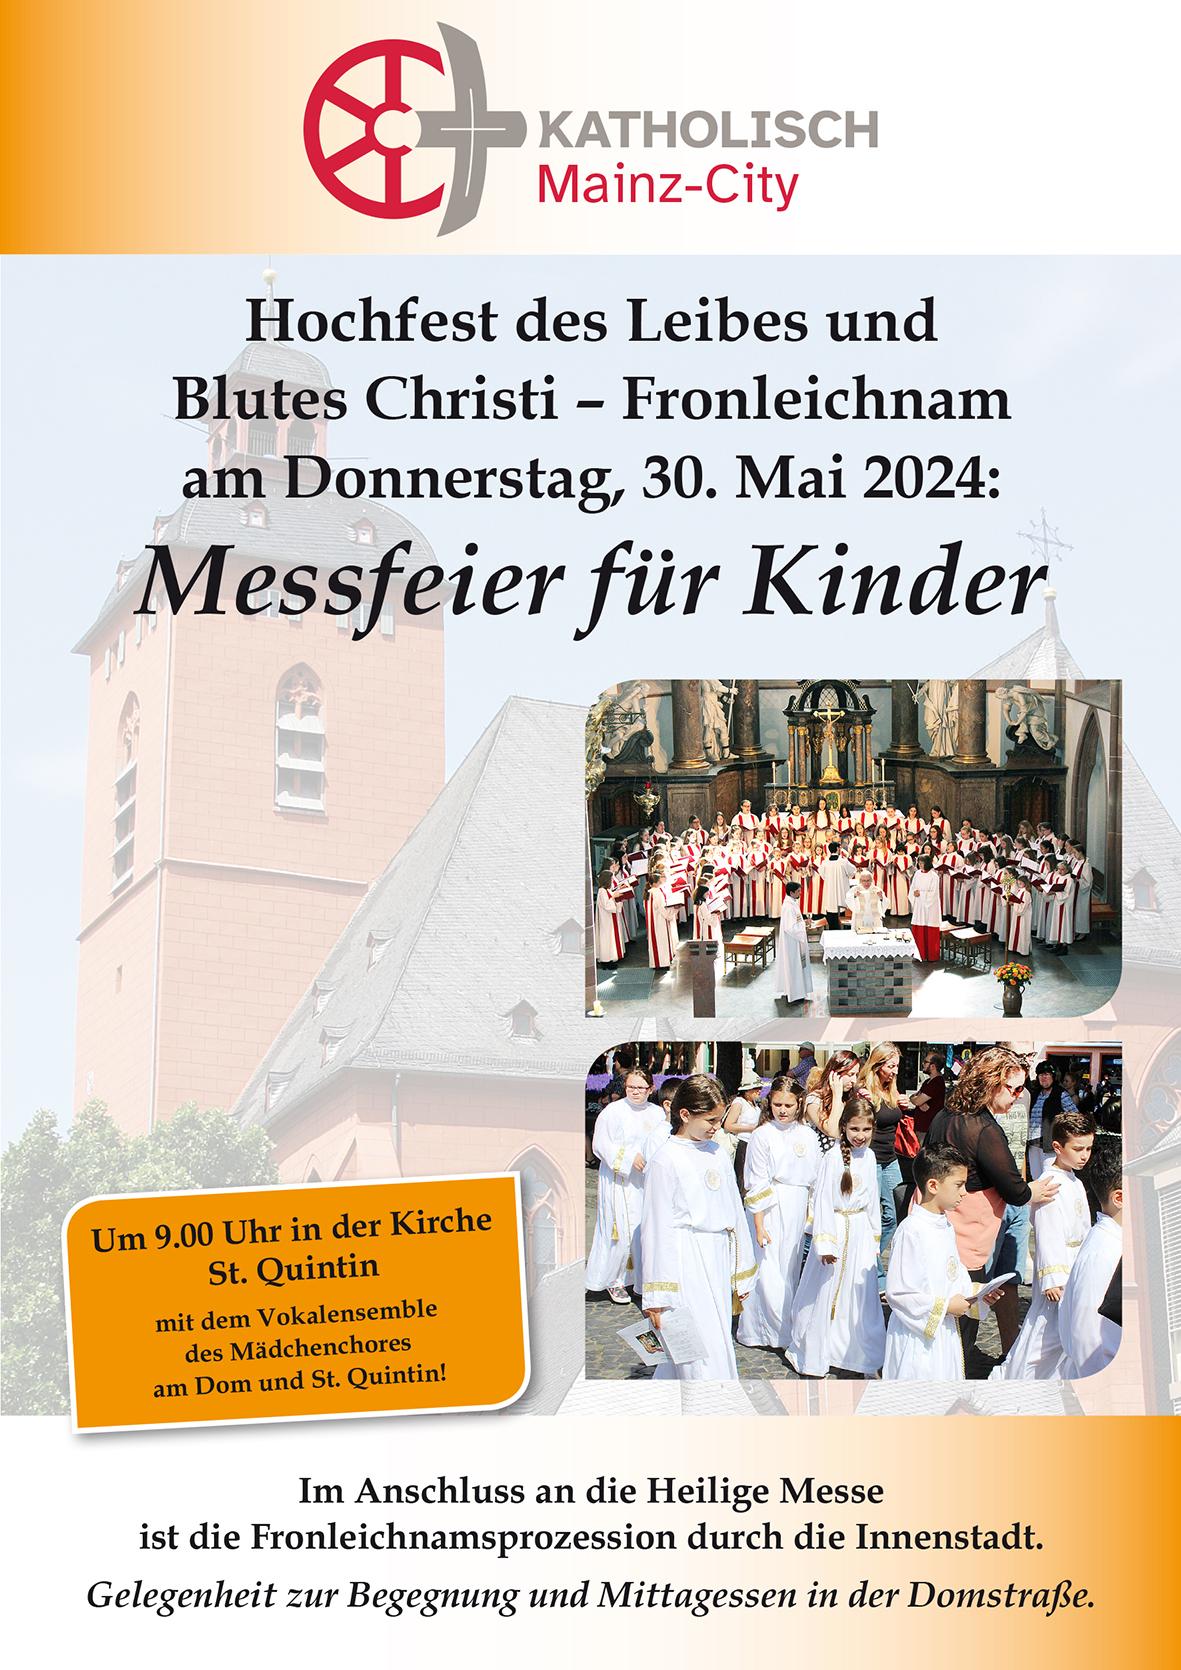 Fronleichnam_Kinder_Plakat (c) Kath. Innenstadtgemeinden Mainz